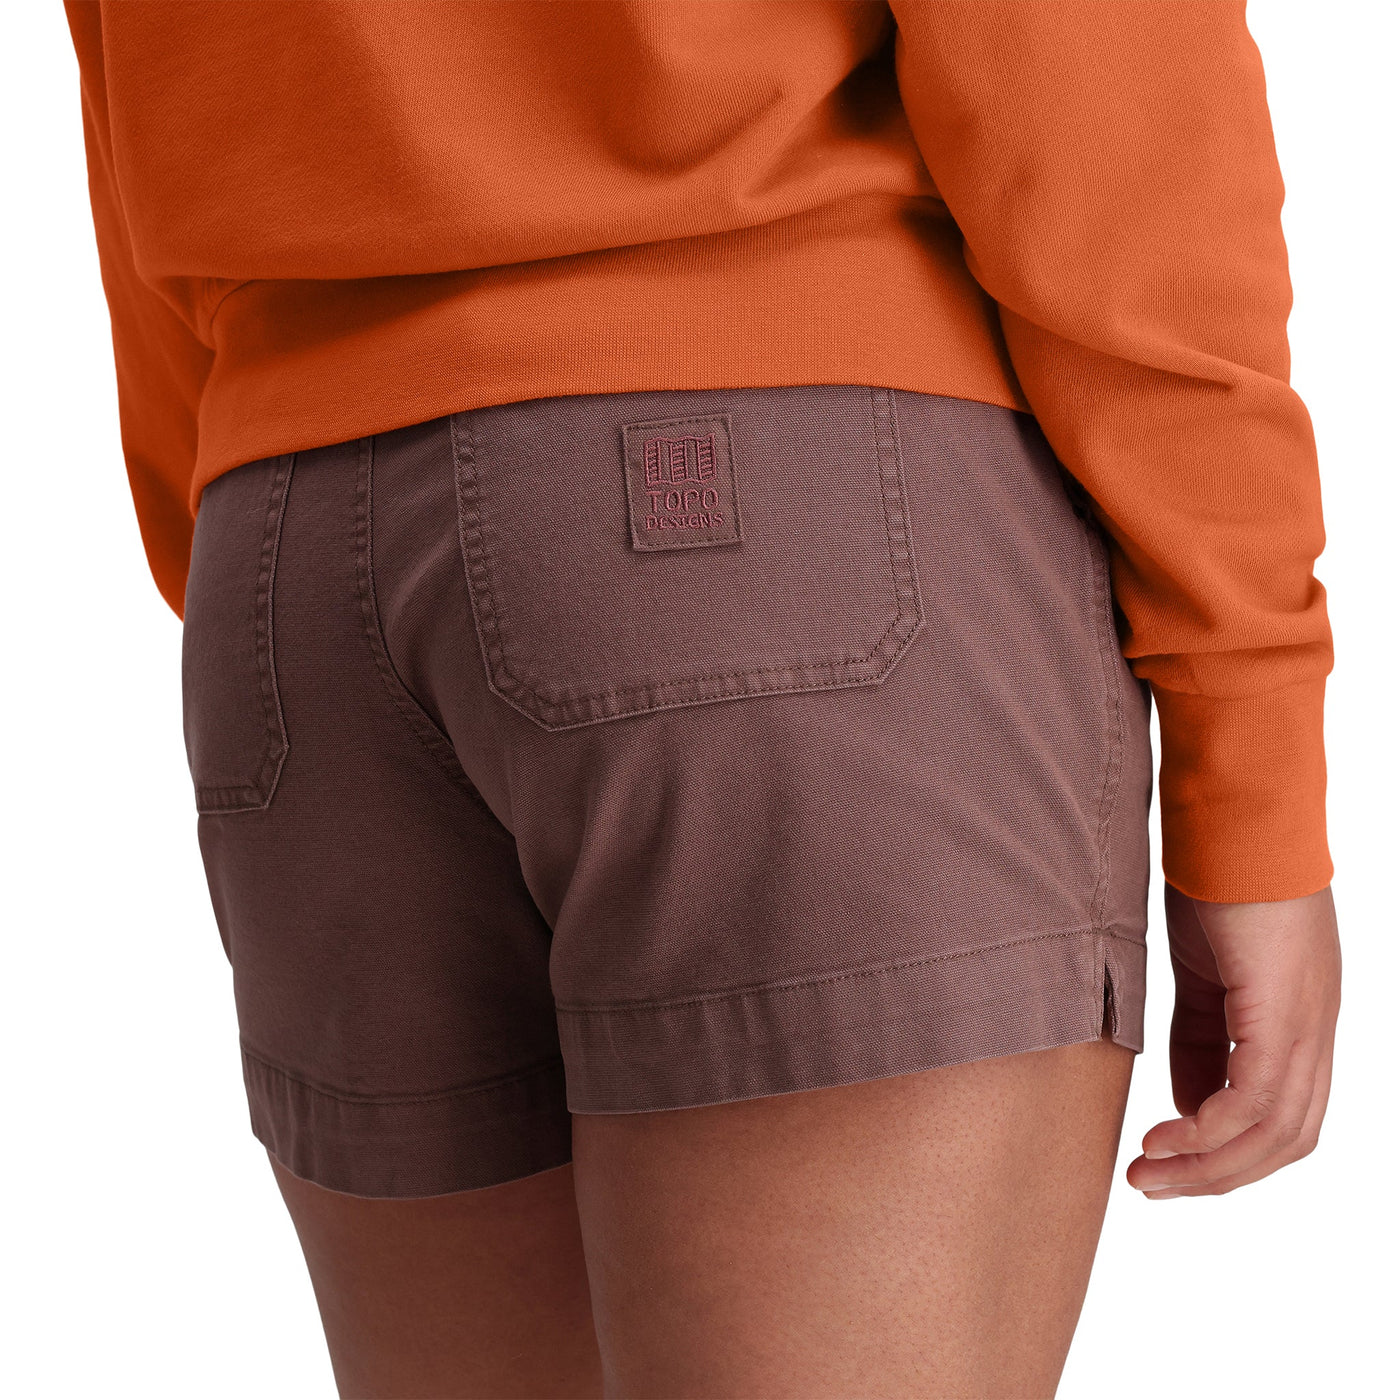 Dirt Shorts - Women's